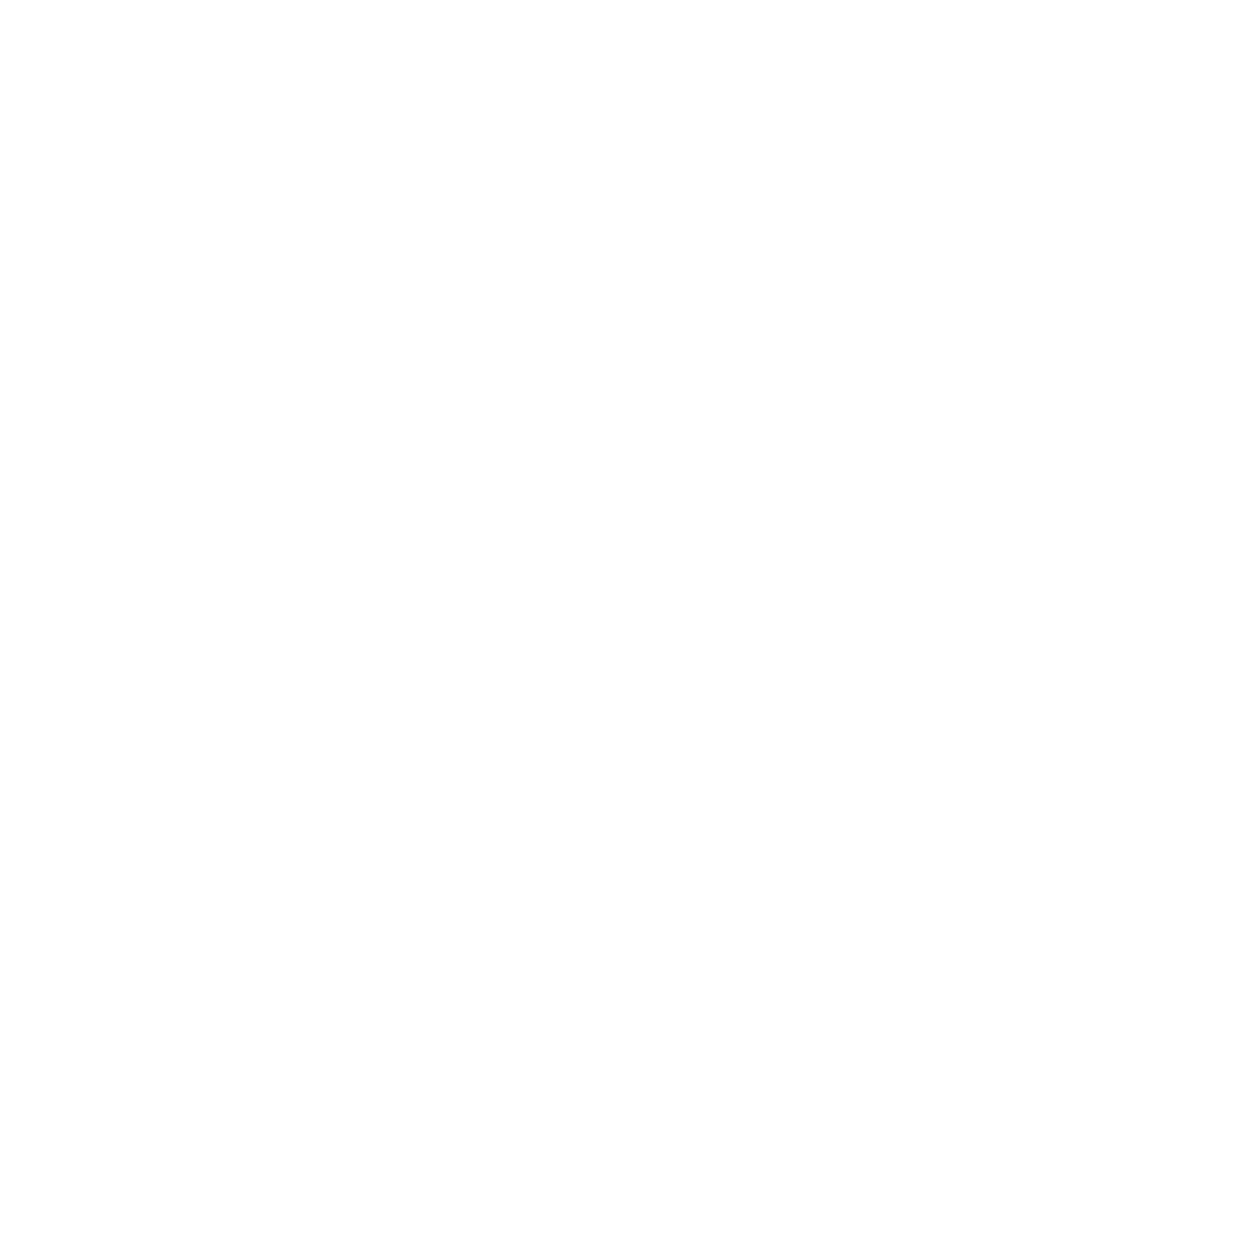 Chaudpain